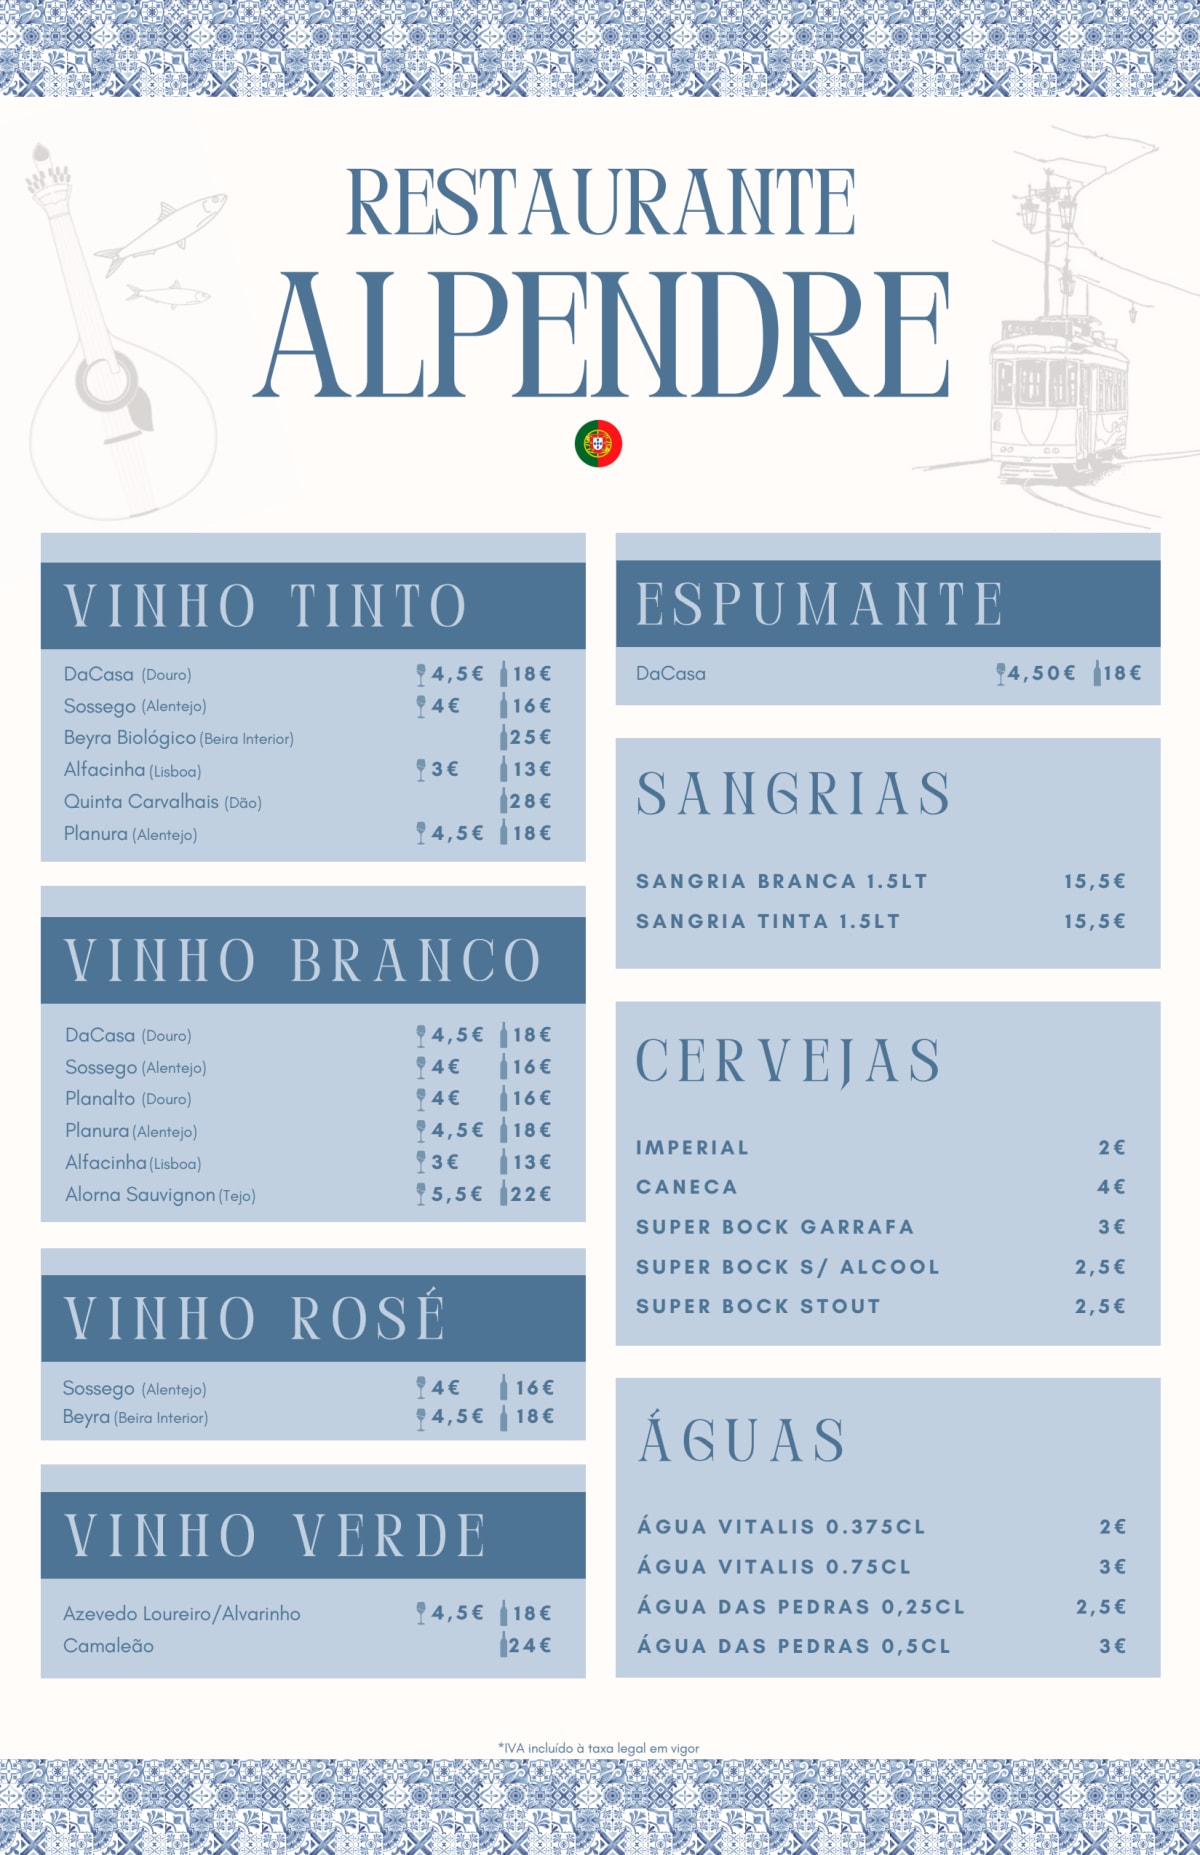 Alpendre menu